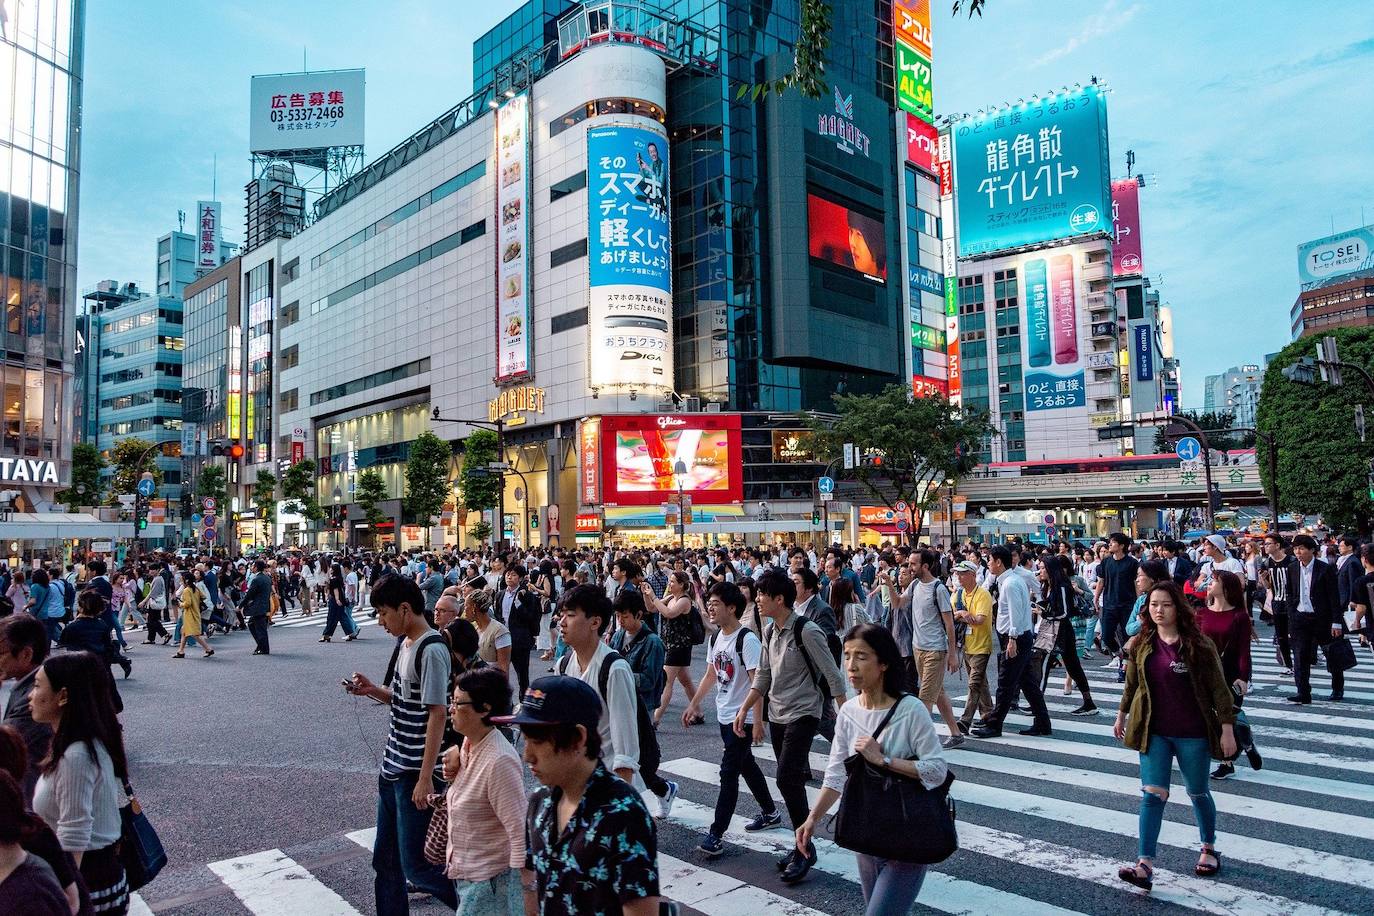 7.- Tokyo | La capital nipona, dice el estudio, "presume de tener el índice de obesidad más bajo de todas las ciudades evaluadas en el informe". Un dato que tiene su origen en la saludable alimentación de este país, a lo que añade otros factores como la alta esperanza de vida. En el otro lado de la balanza está el coste de la vida y la polución, de las más altas de las urbes que lideran este ranking.